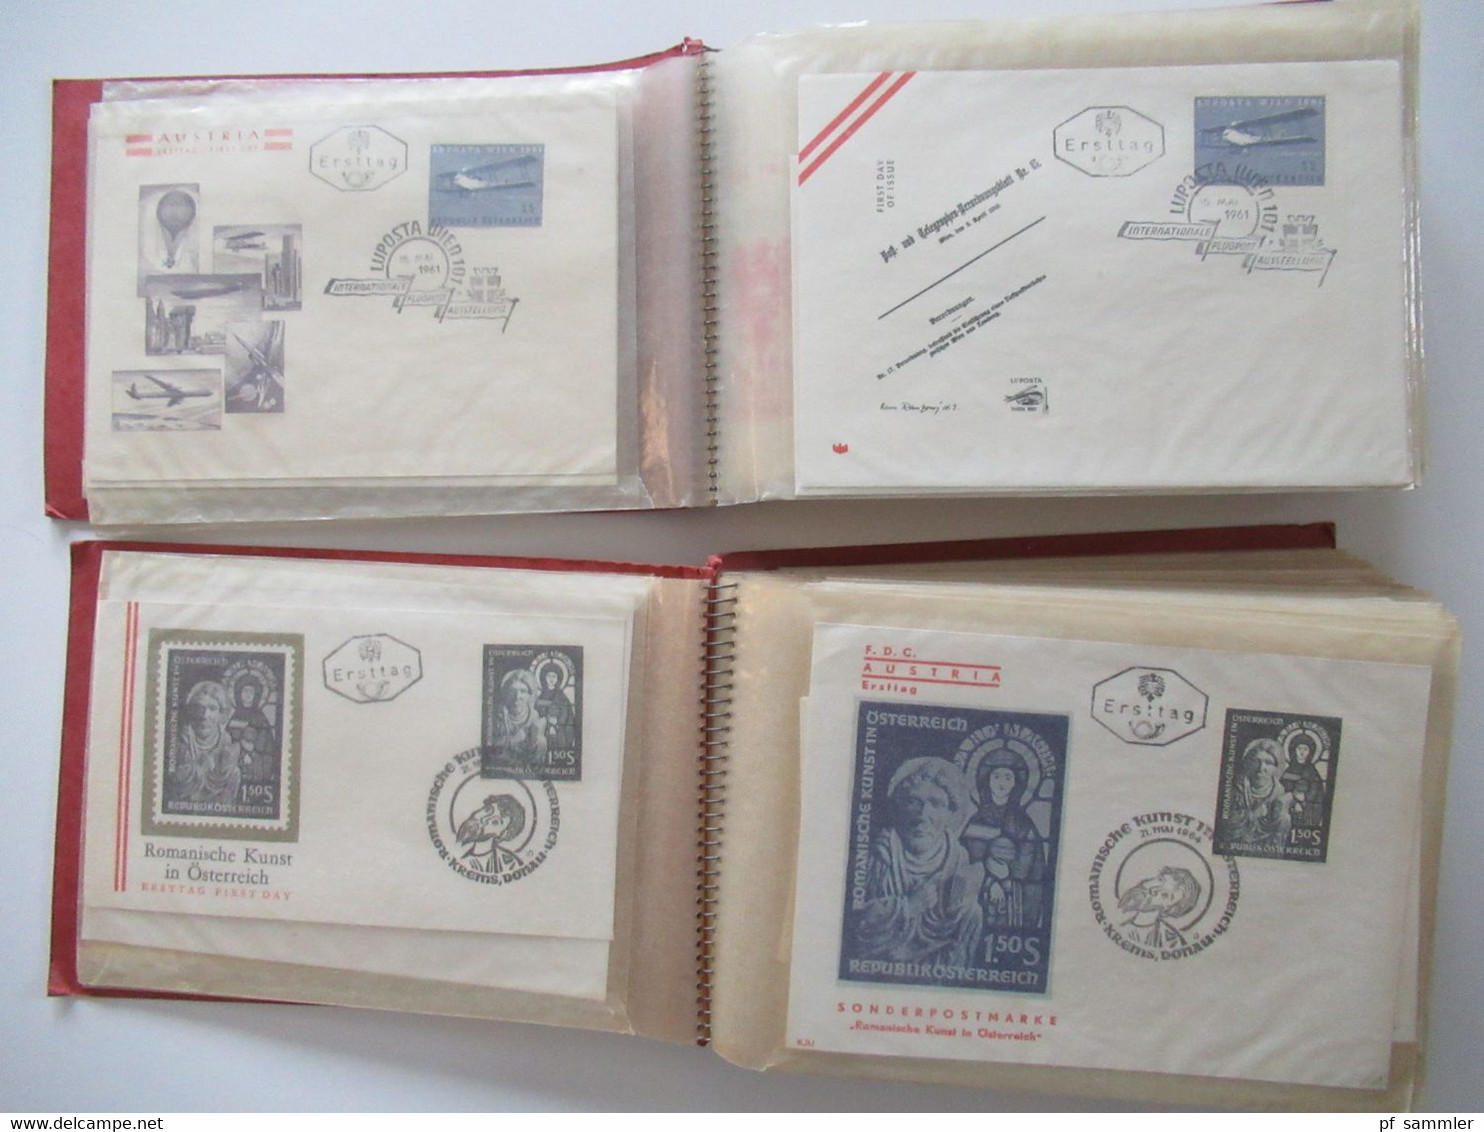 Österreich 1960 - ca. 1969 FDC / Belegeposten mit 190 Stück / auch Christkindl in 2 Alben + lose Briefe!